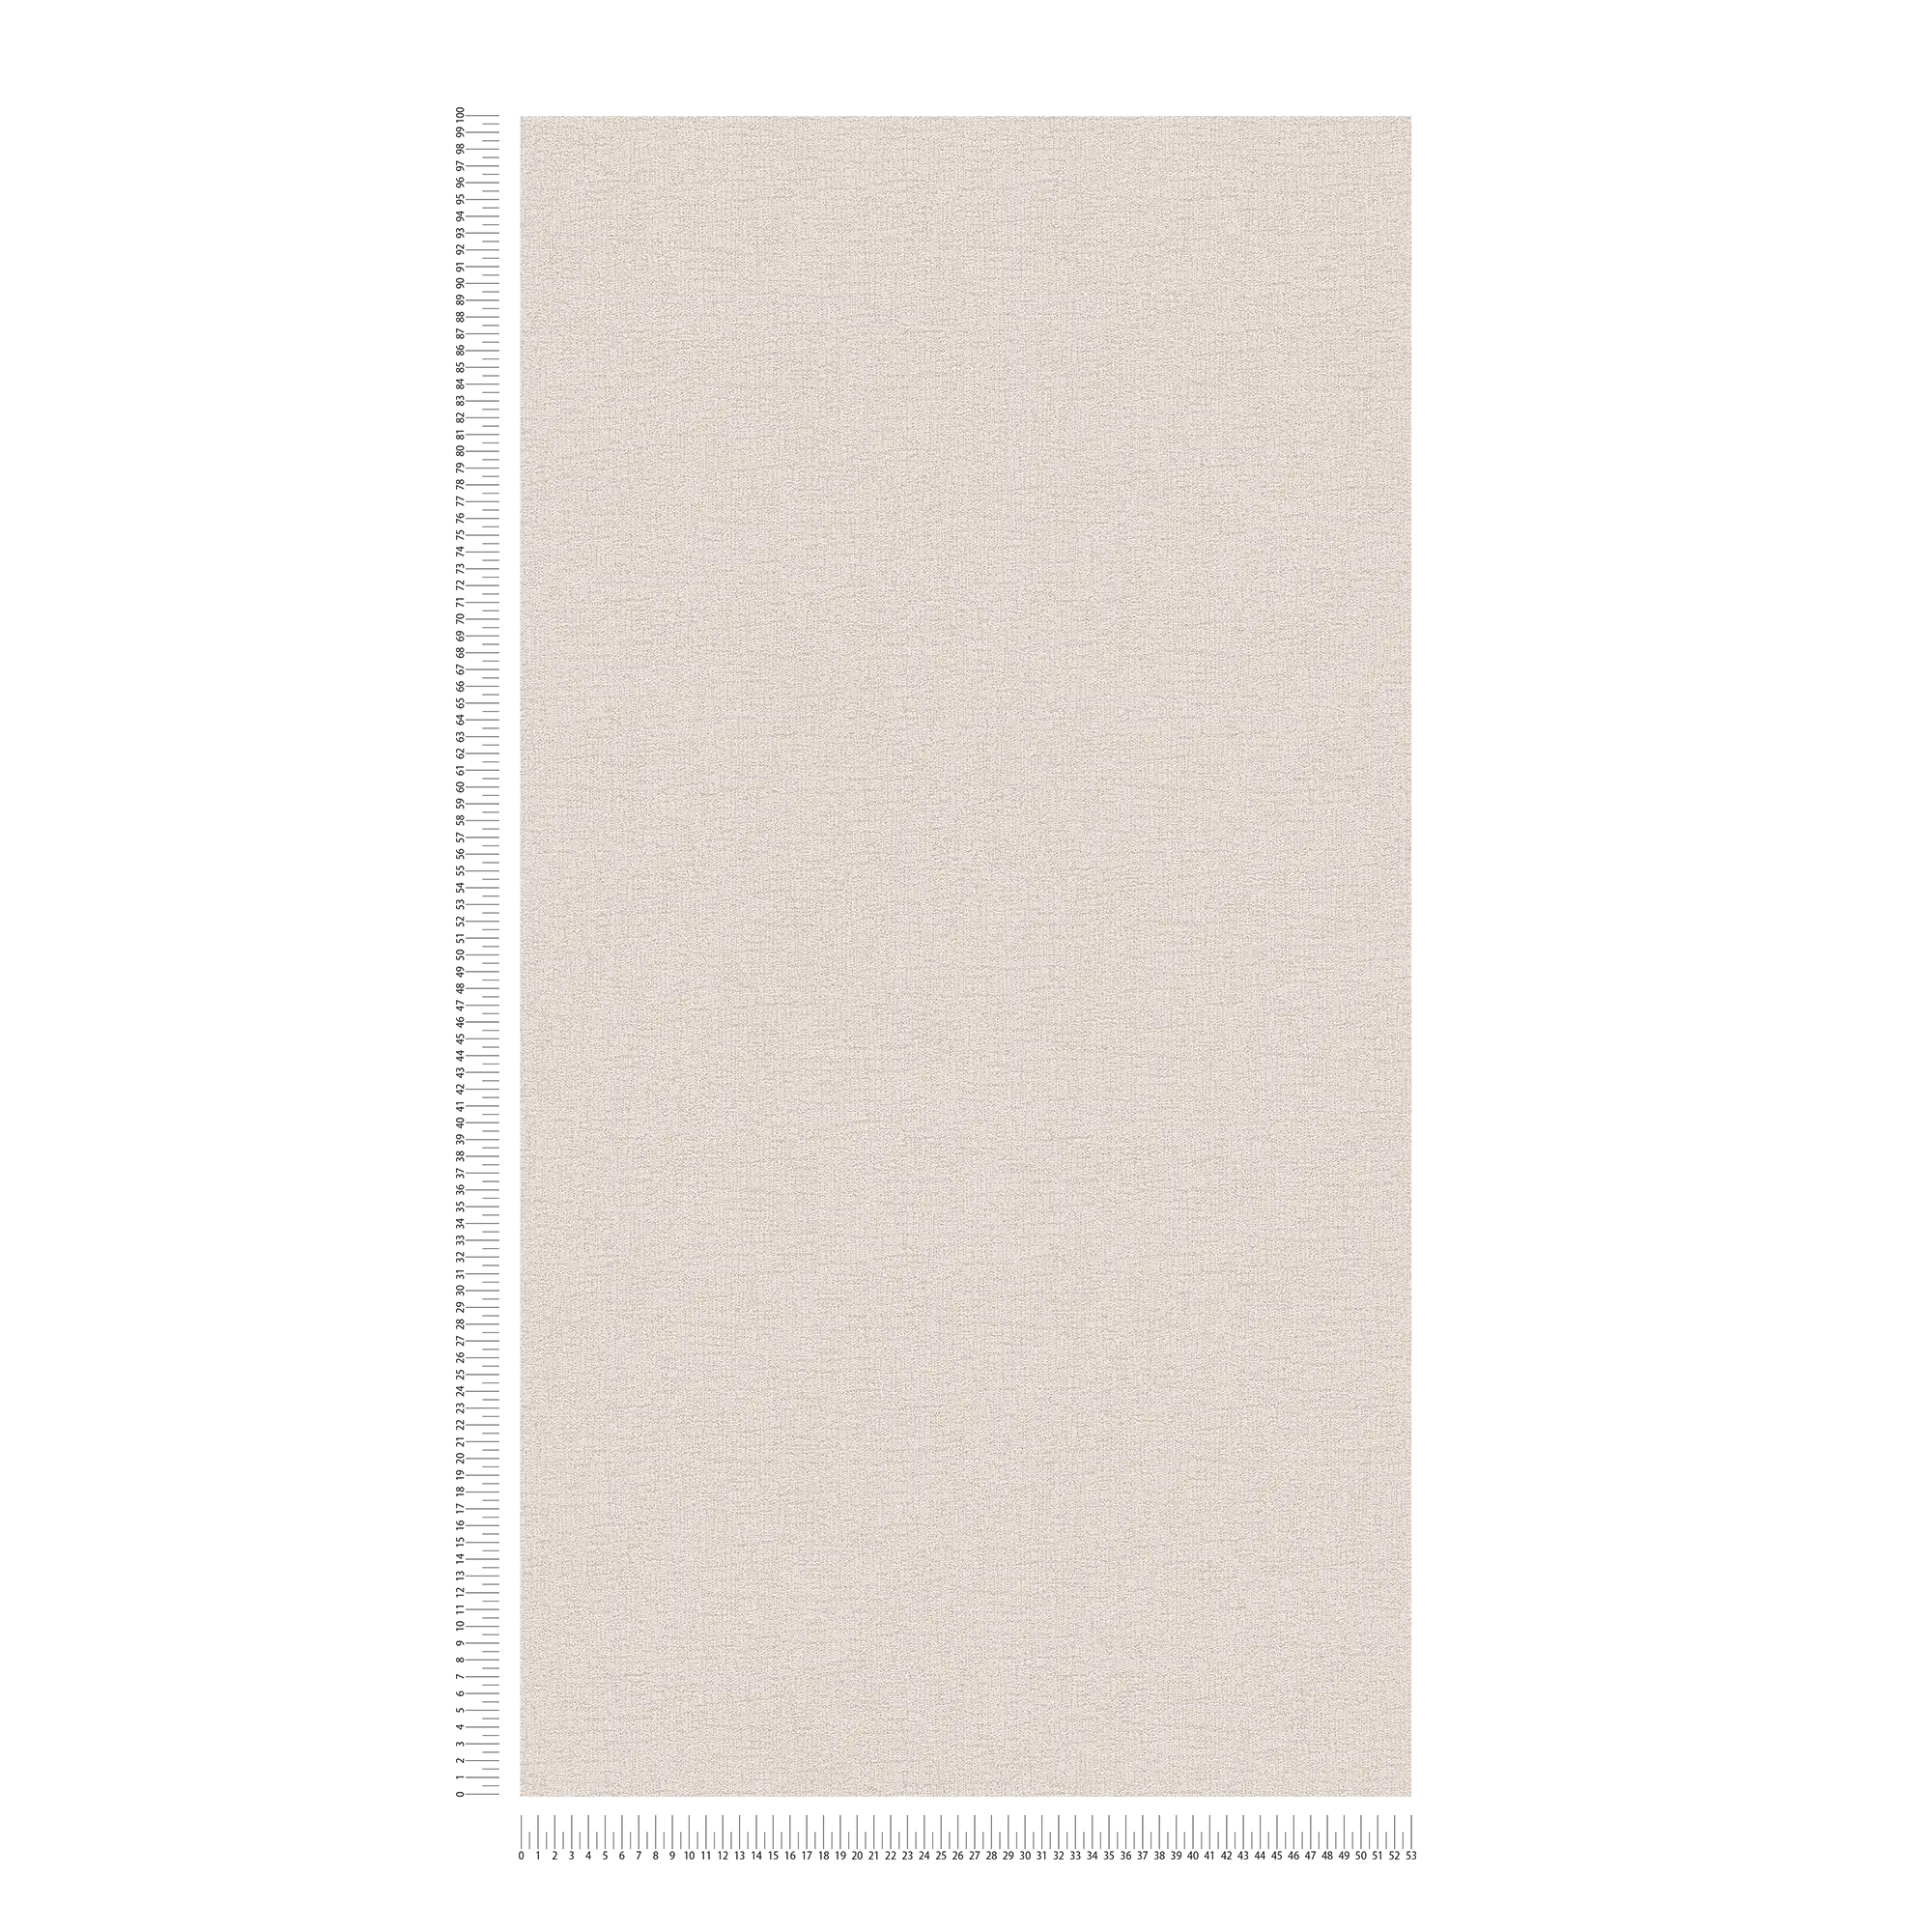             Wallpaper light beige linen look with textured pattern - beige
        